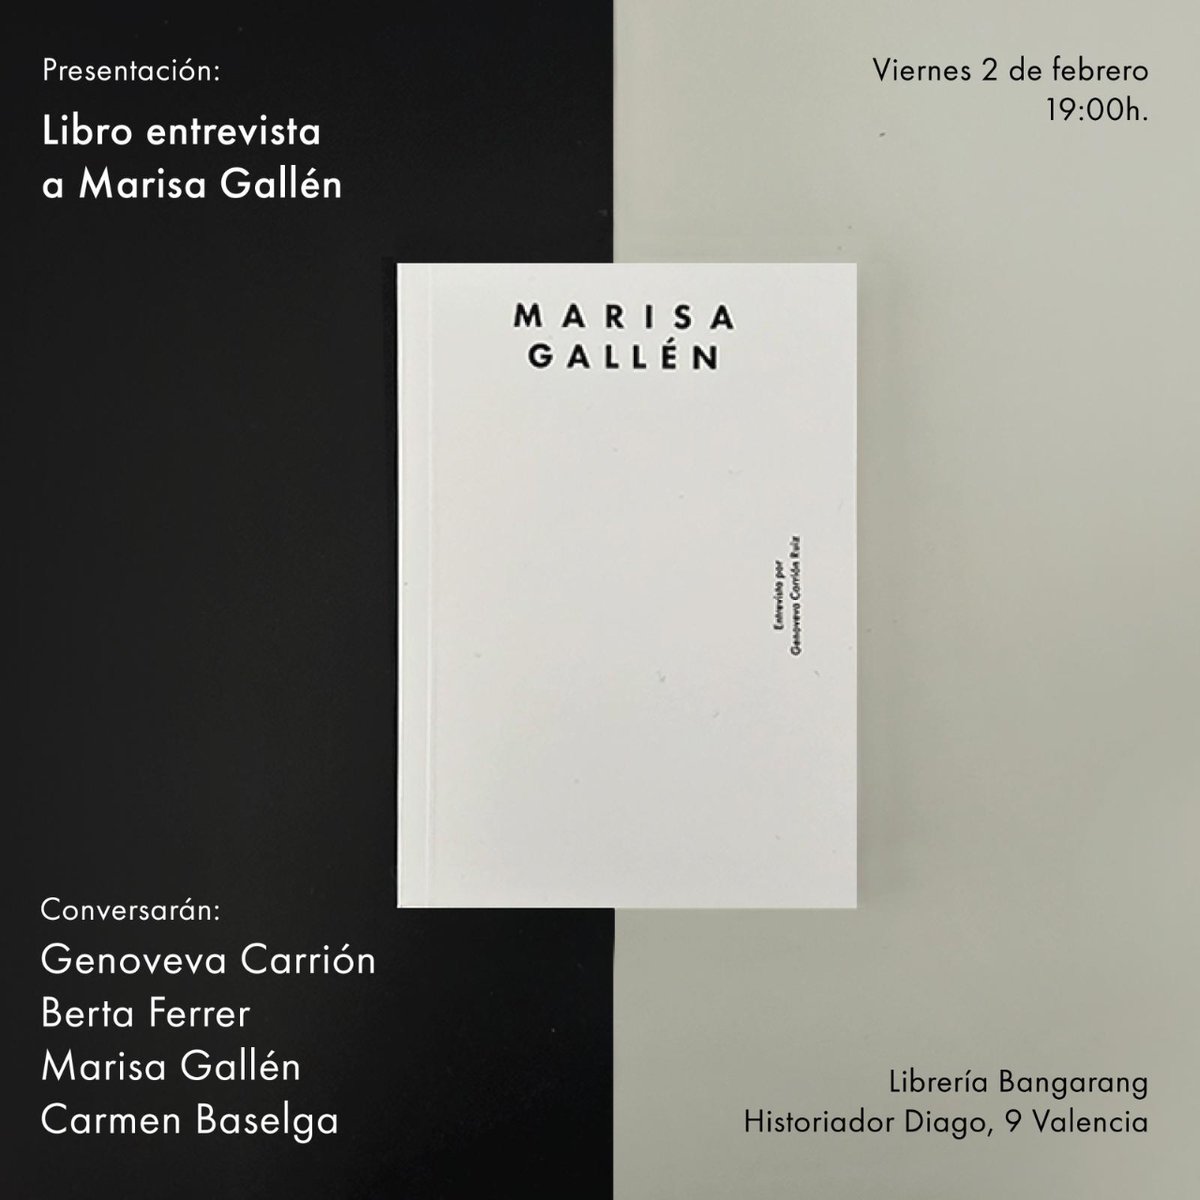 El viernes 2 de febrero a las 19h @Genoveva Carrión y Berta Ferrer presentan el libro Entrevistas a Marisa Gallén (Premio Nacional de Innovación y Diseño 2019). En la presentación intervendrán además la propia Marisa Gallén y la diseñadora Carmen Baselga.